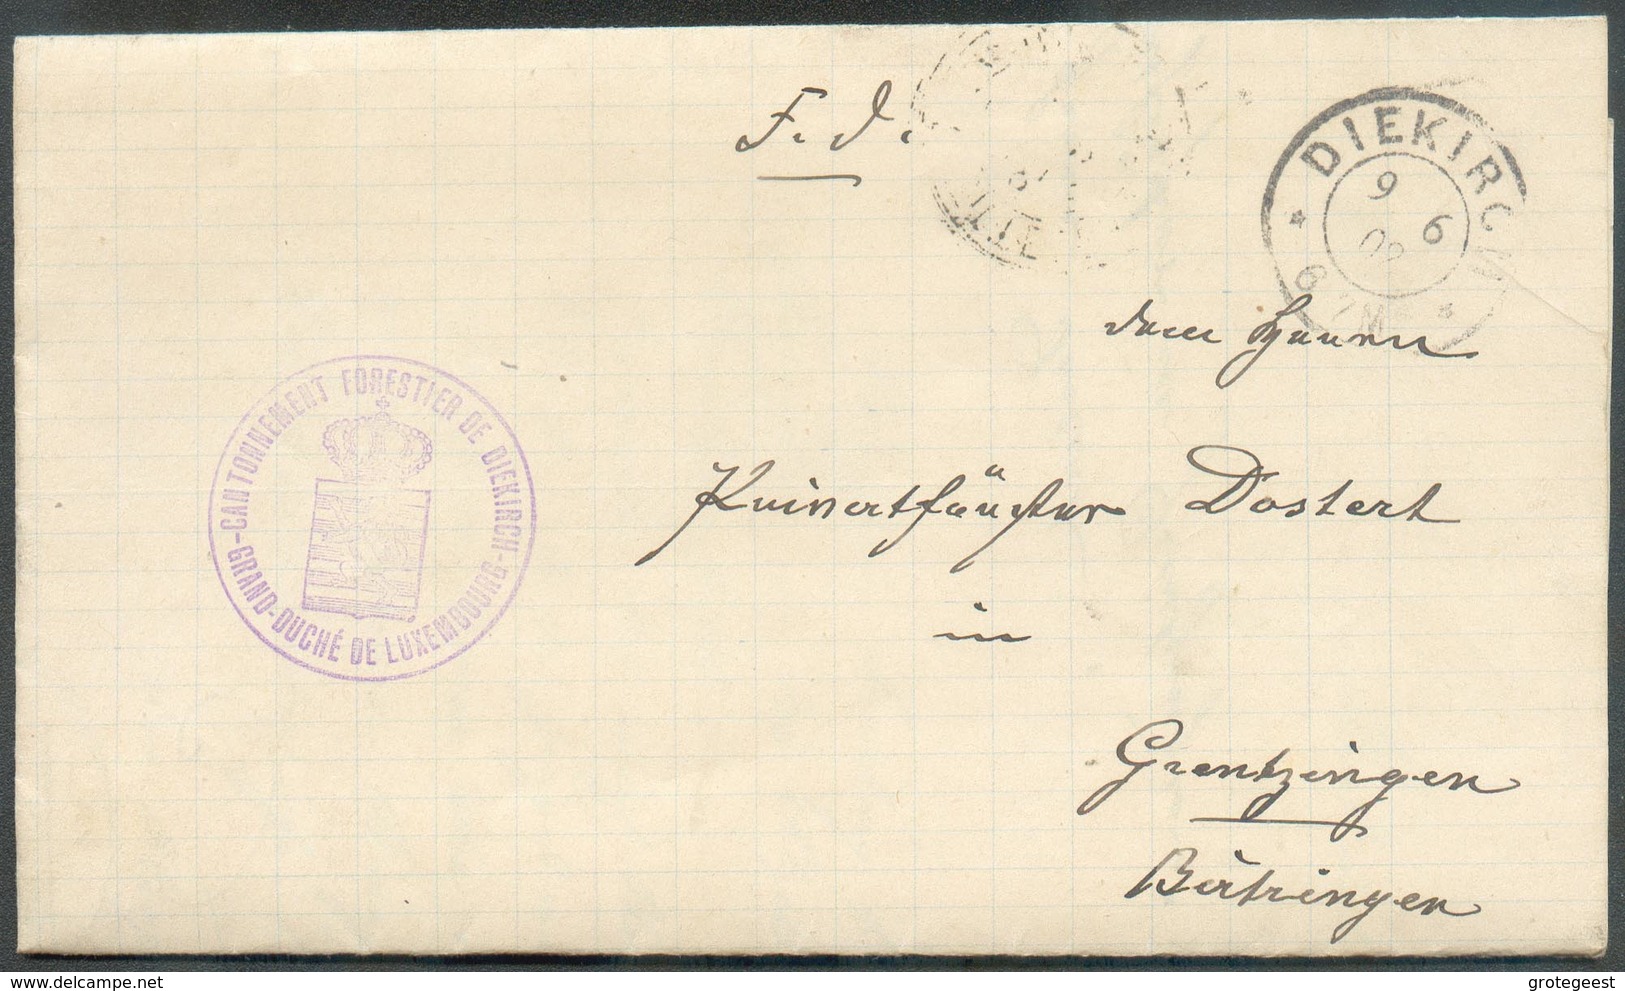 Lettre En Franchise De Port De DIEKIRCH Le 9-6-1902 Avec Cachet Violet CANTONNEMENT FORESTIER DE DIEKIRCH * GRAND-DUCHE - Officials